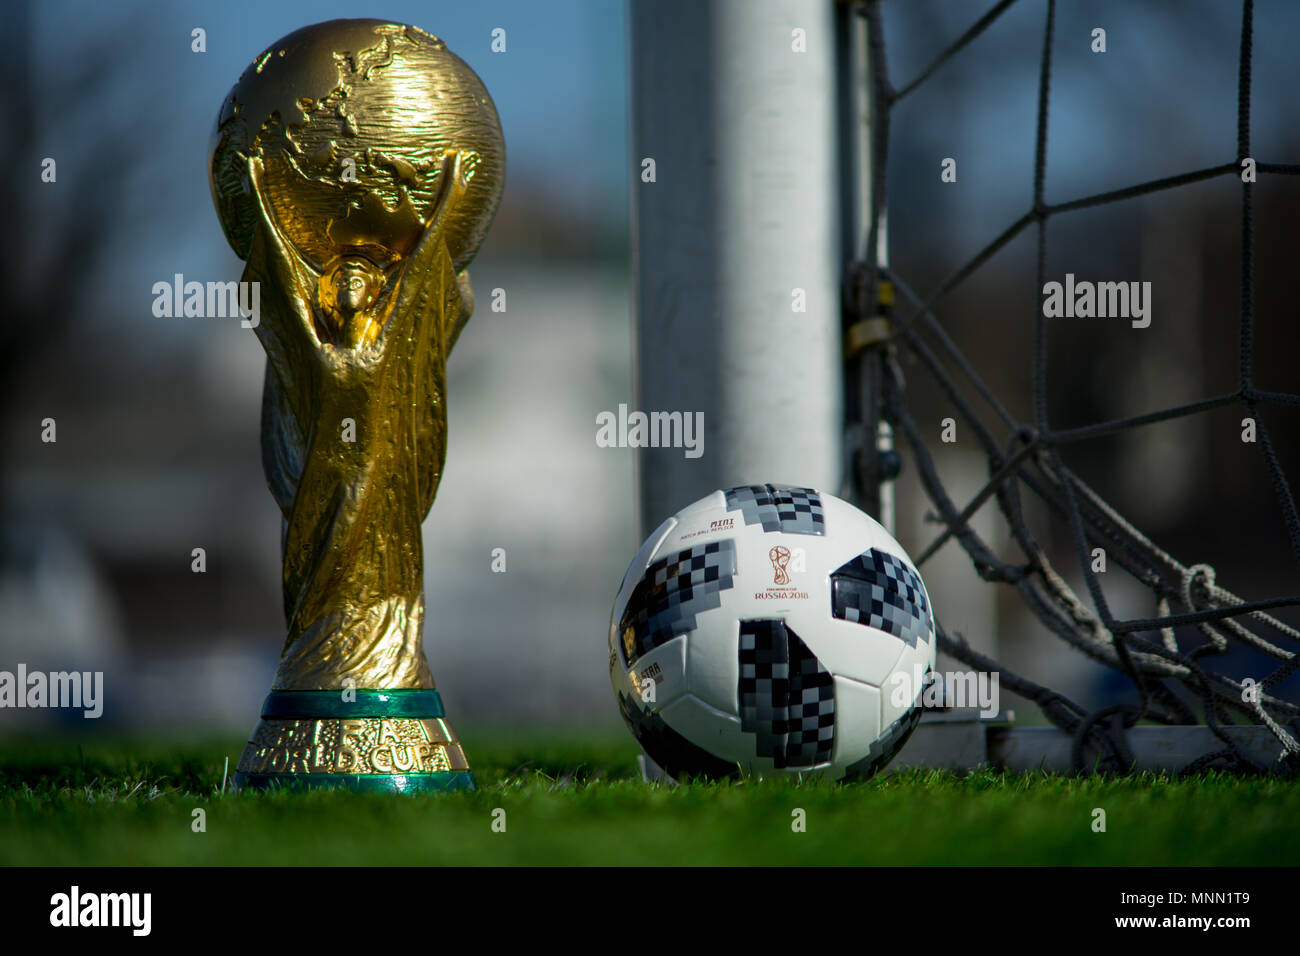 9 avril 2018 Moscou, Russie Trophée de la Coupe du Monde de la Fifa et  ballon officiel de la Coupe du Monde FIFA 2018 Adidas Telstar 18 sur  l'herbe verte du footbal